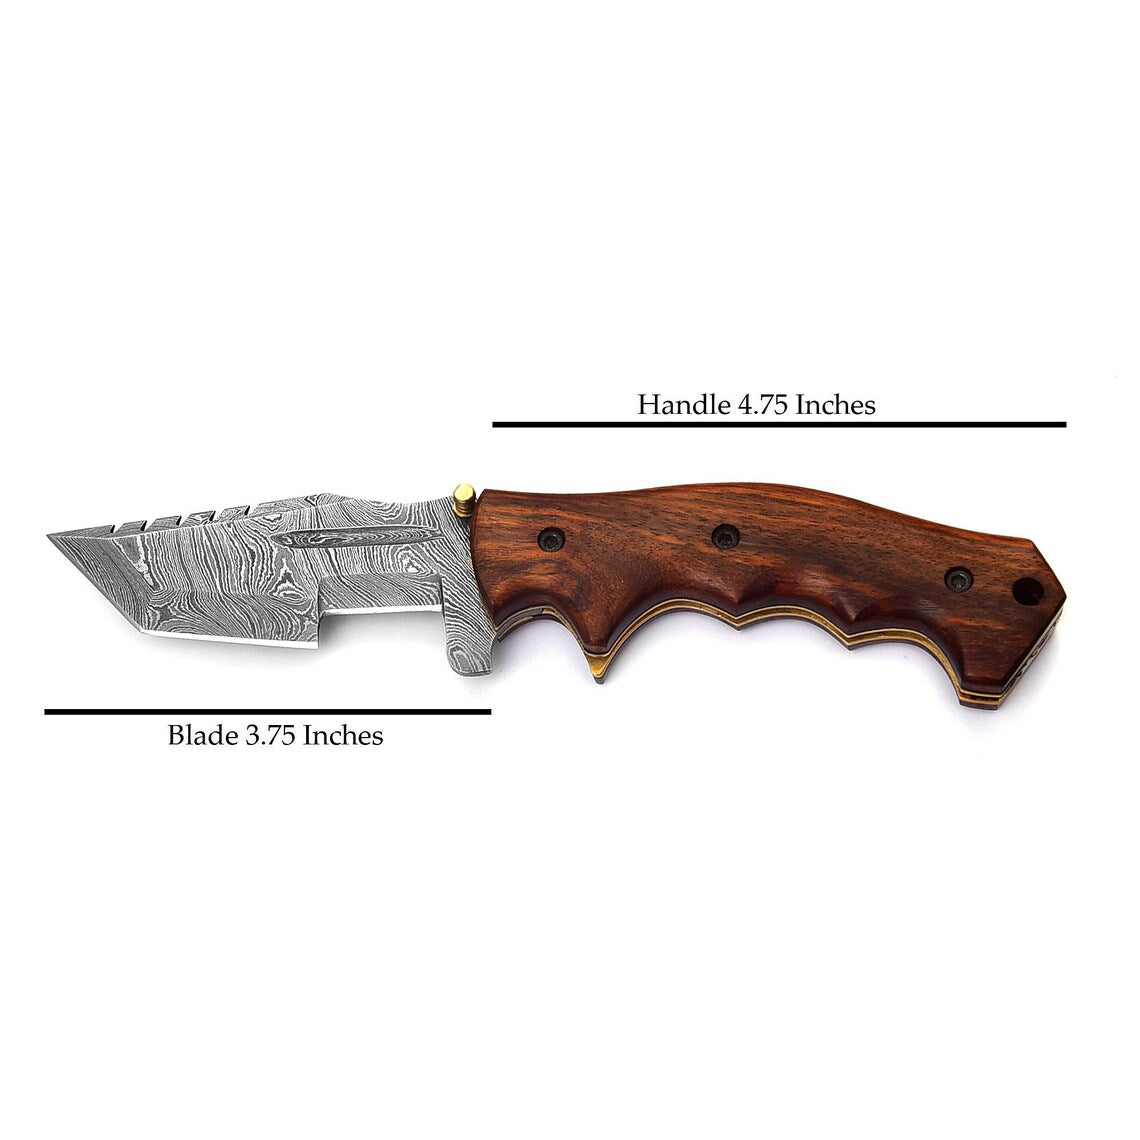 Handmade Damascus Steel Tracker Pocket Knife for Camping